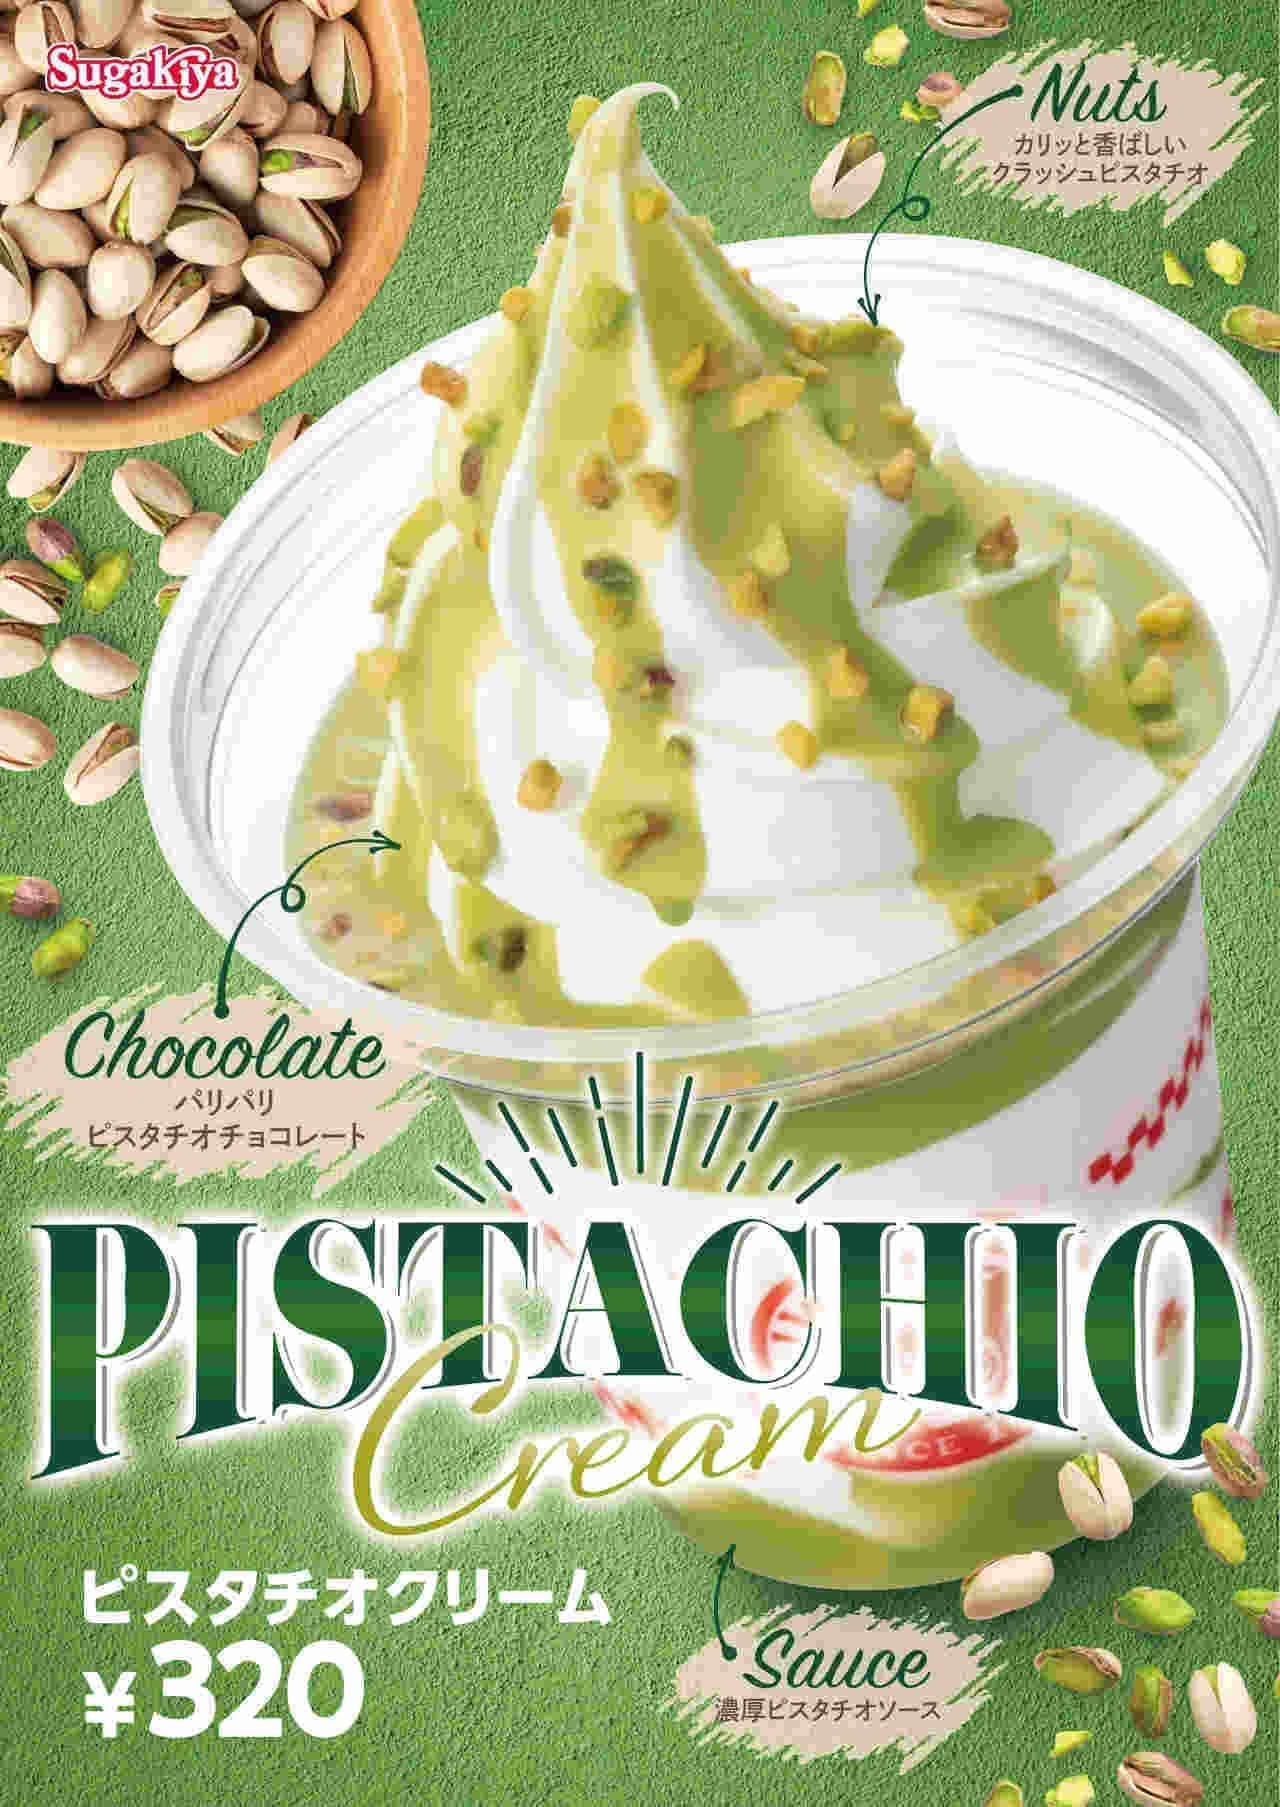 Sugakiya "Pistachio Cream